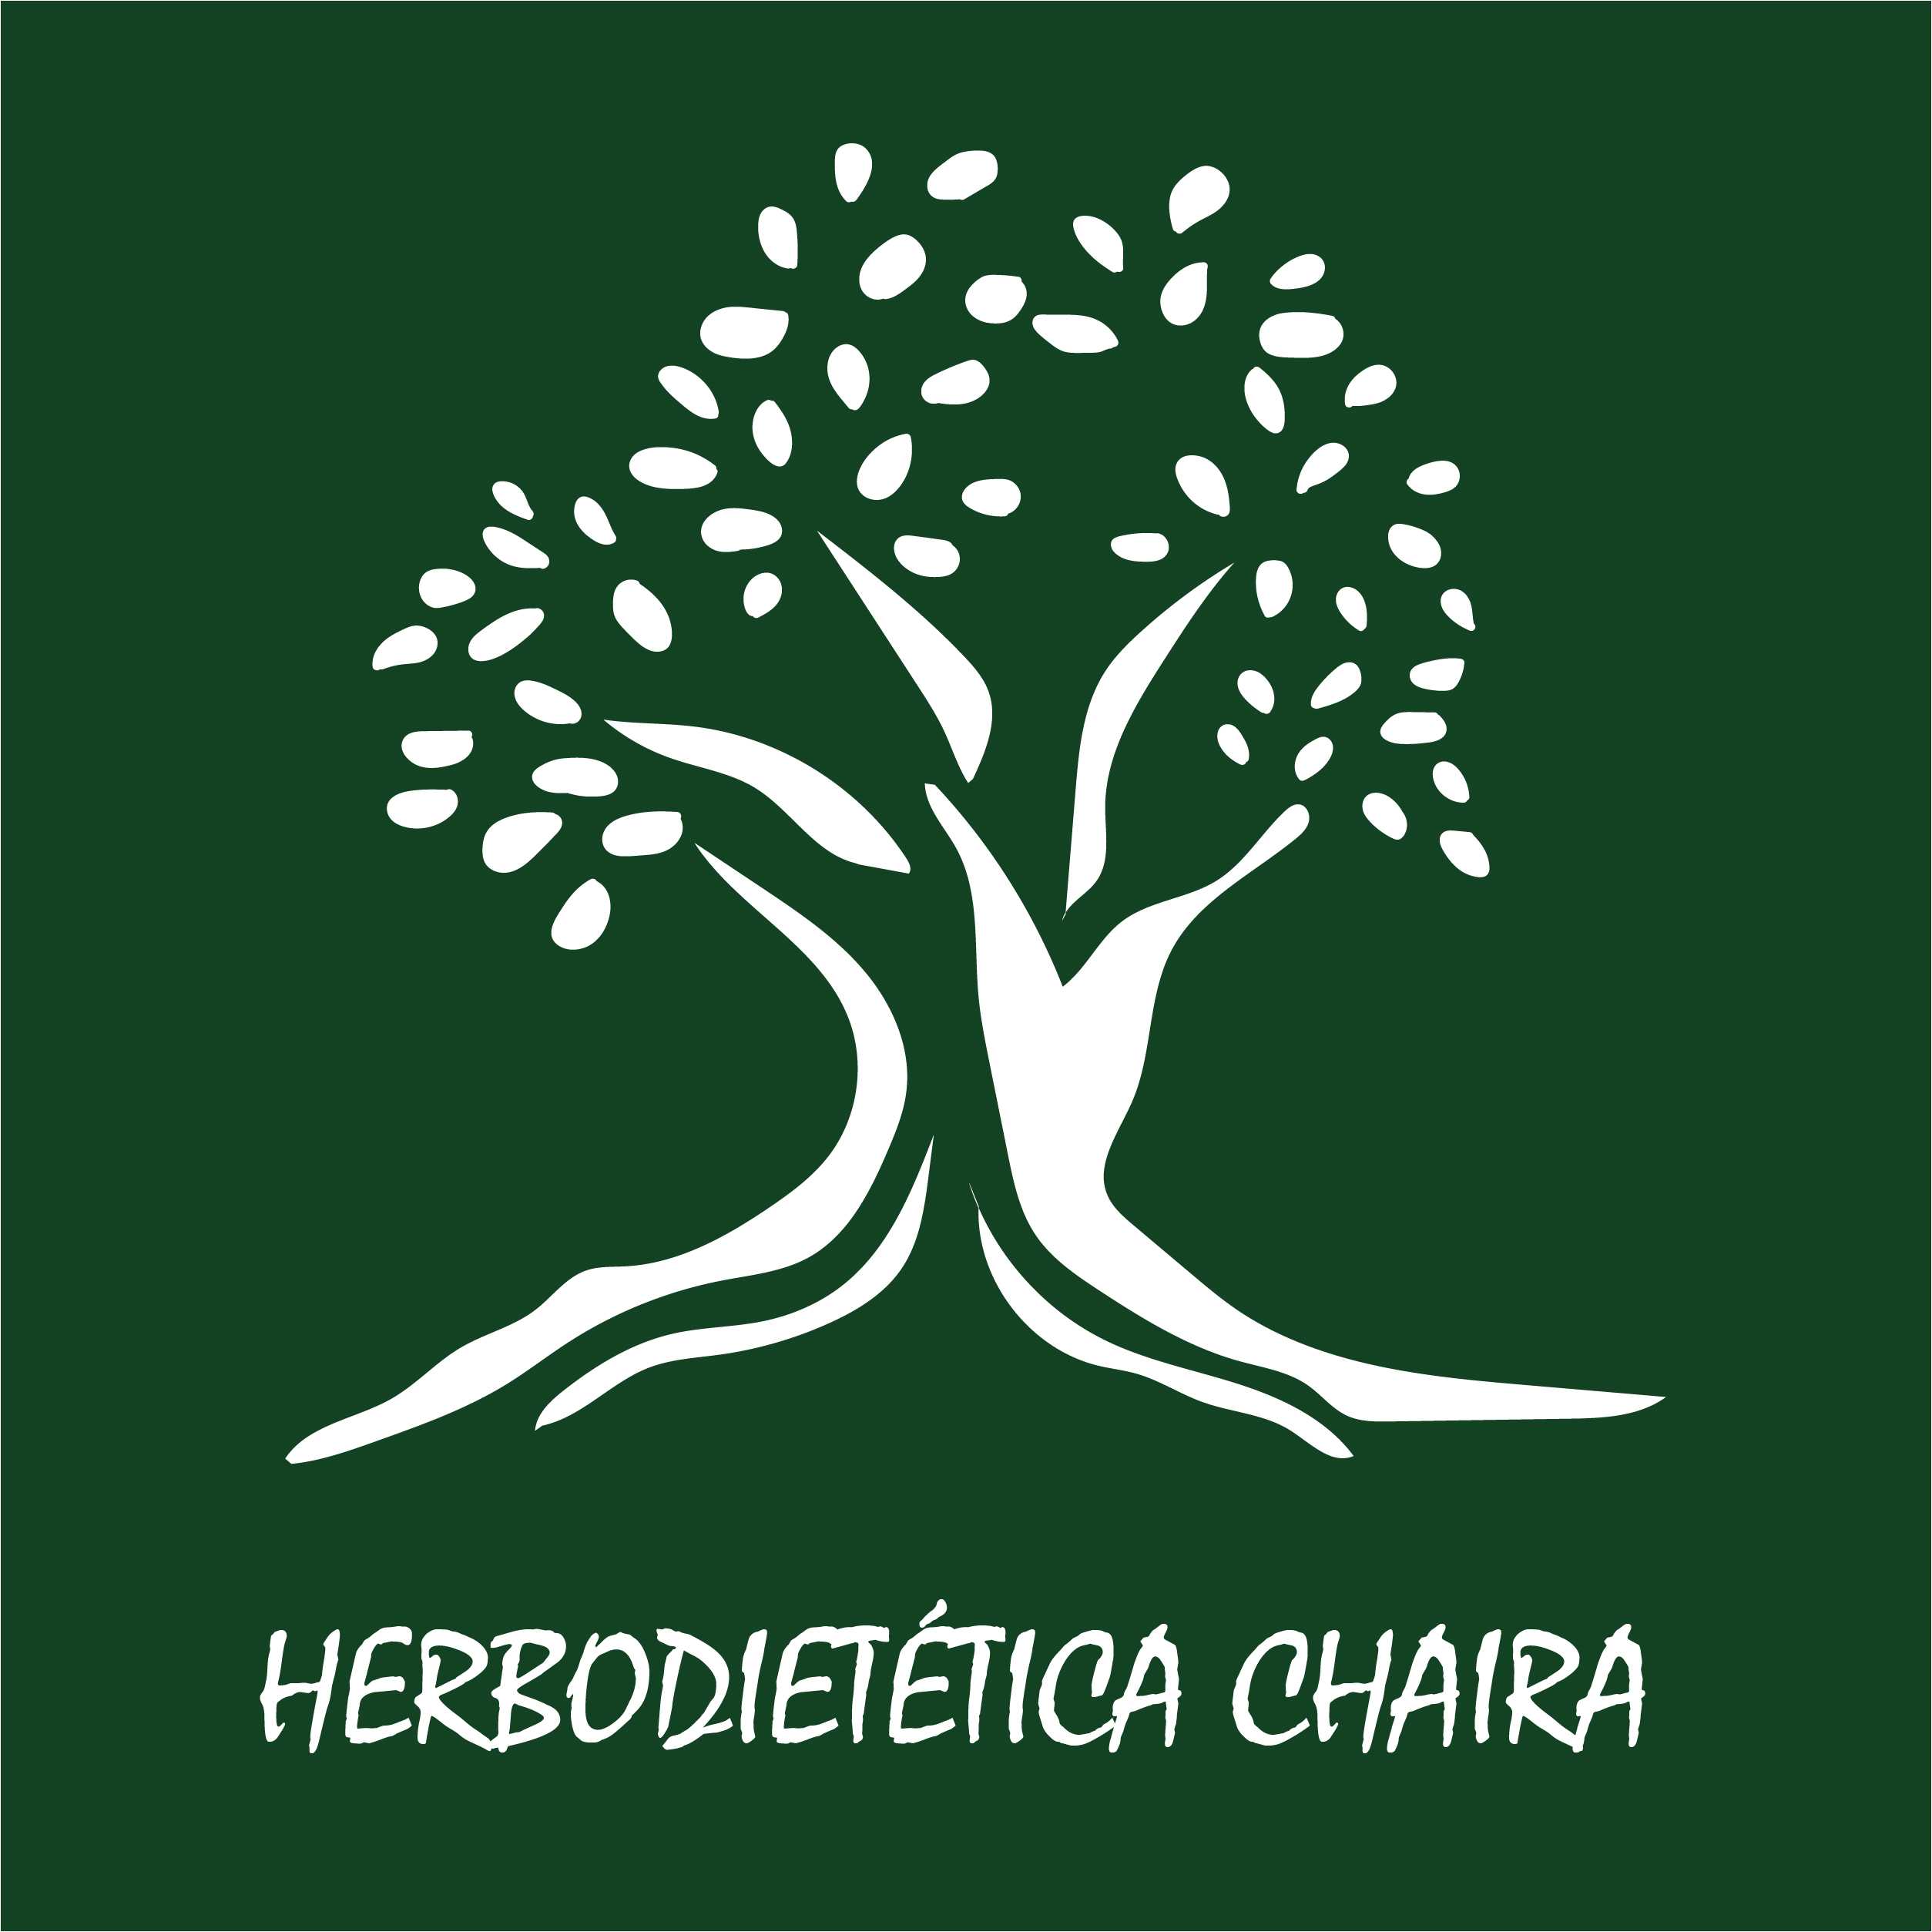 Herbodietética Chaira